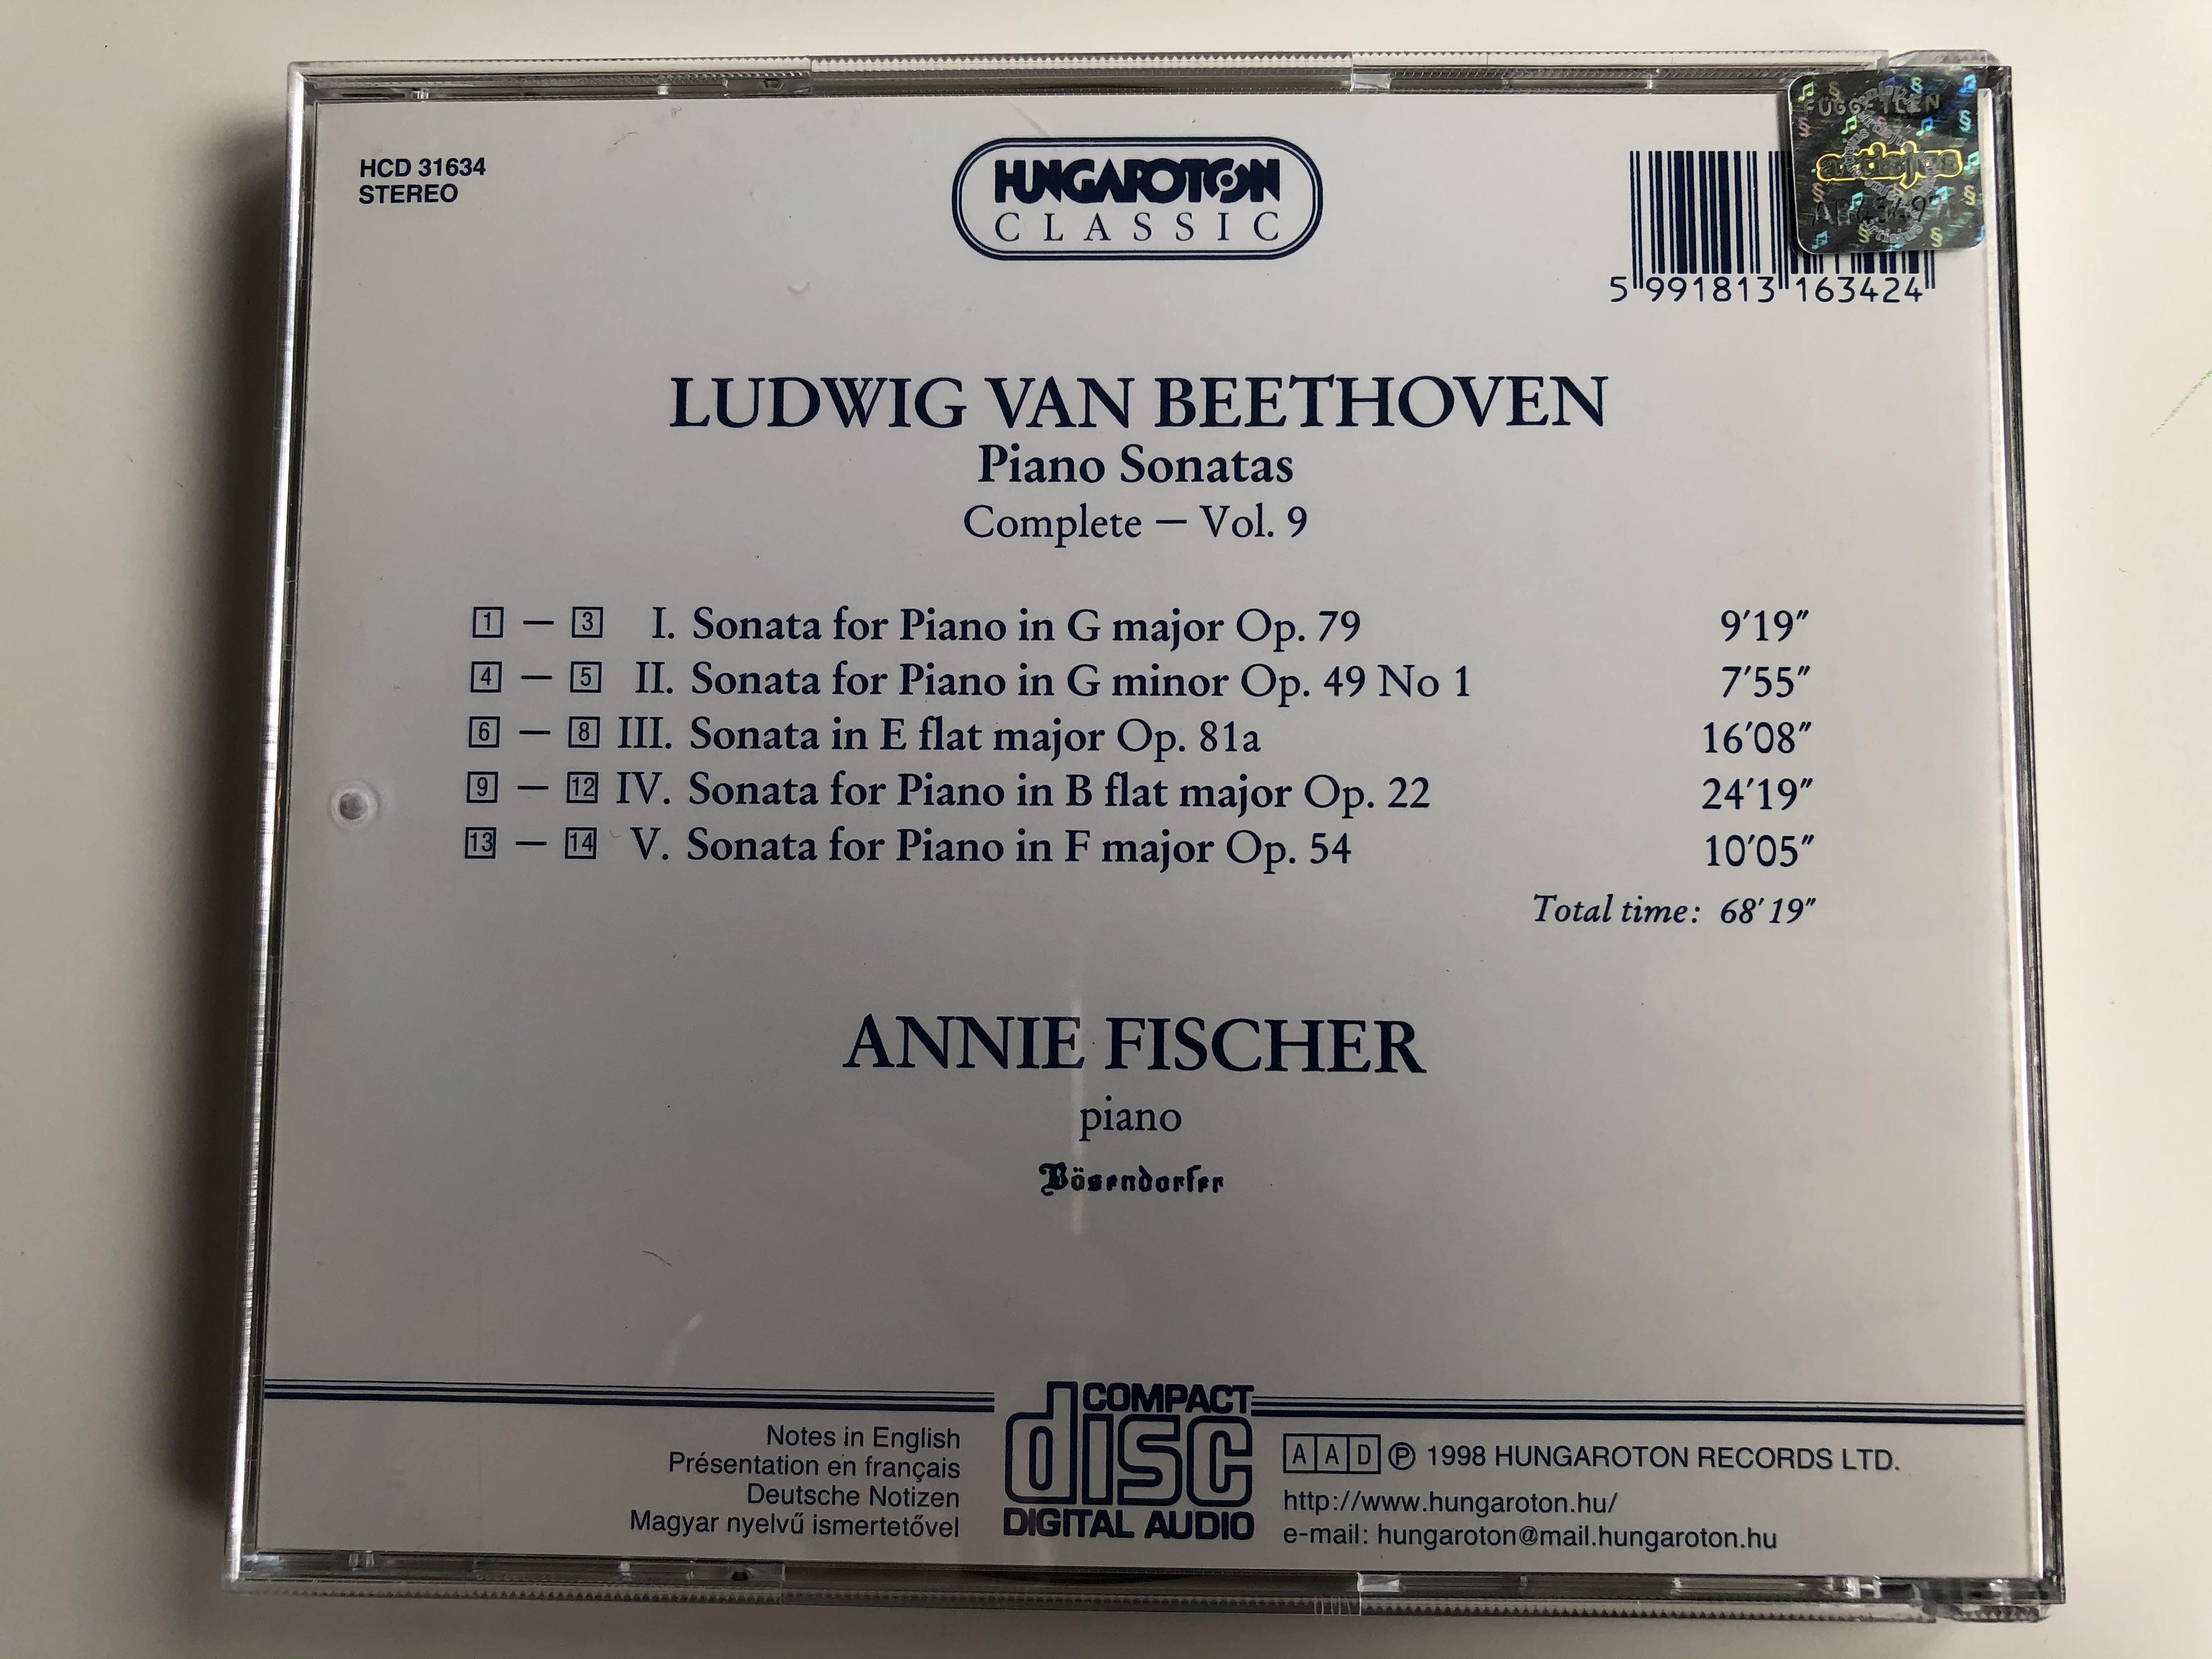 annie-fischer-ludwig-van-beethoven-piano-sonatas-complete-vol.-9-g-major-op.-79-g-minor-op.-491-e-flat-major-op.-81a-b-flat-major-op.-22-f-major-op.-54-hungaroton-classic-audio-cd-199-9-.jpg